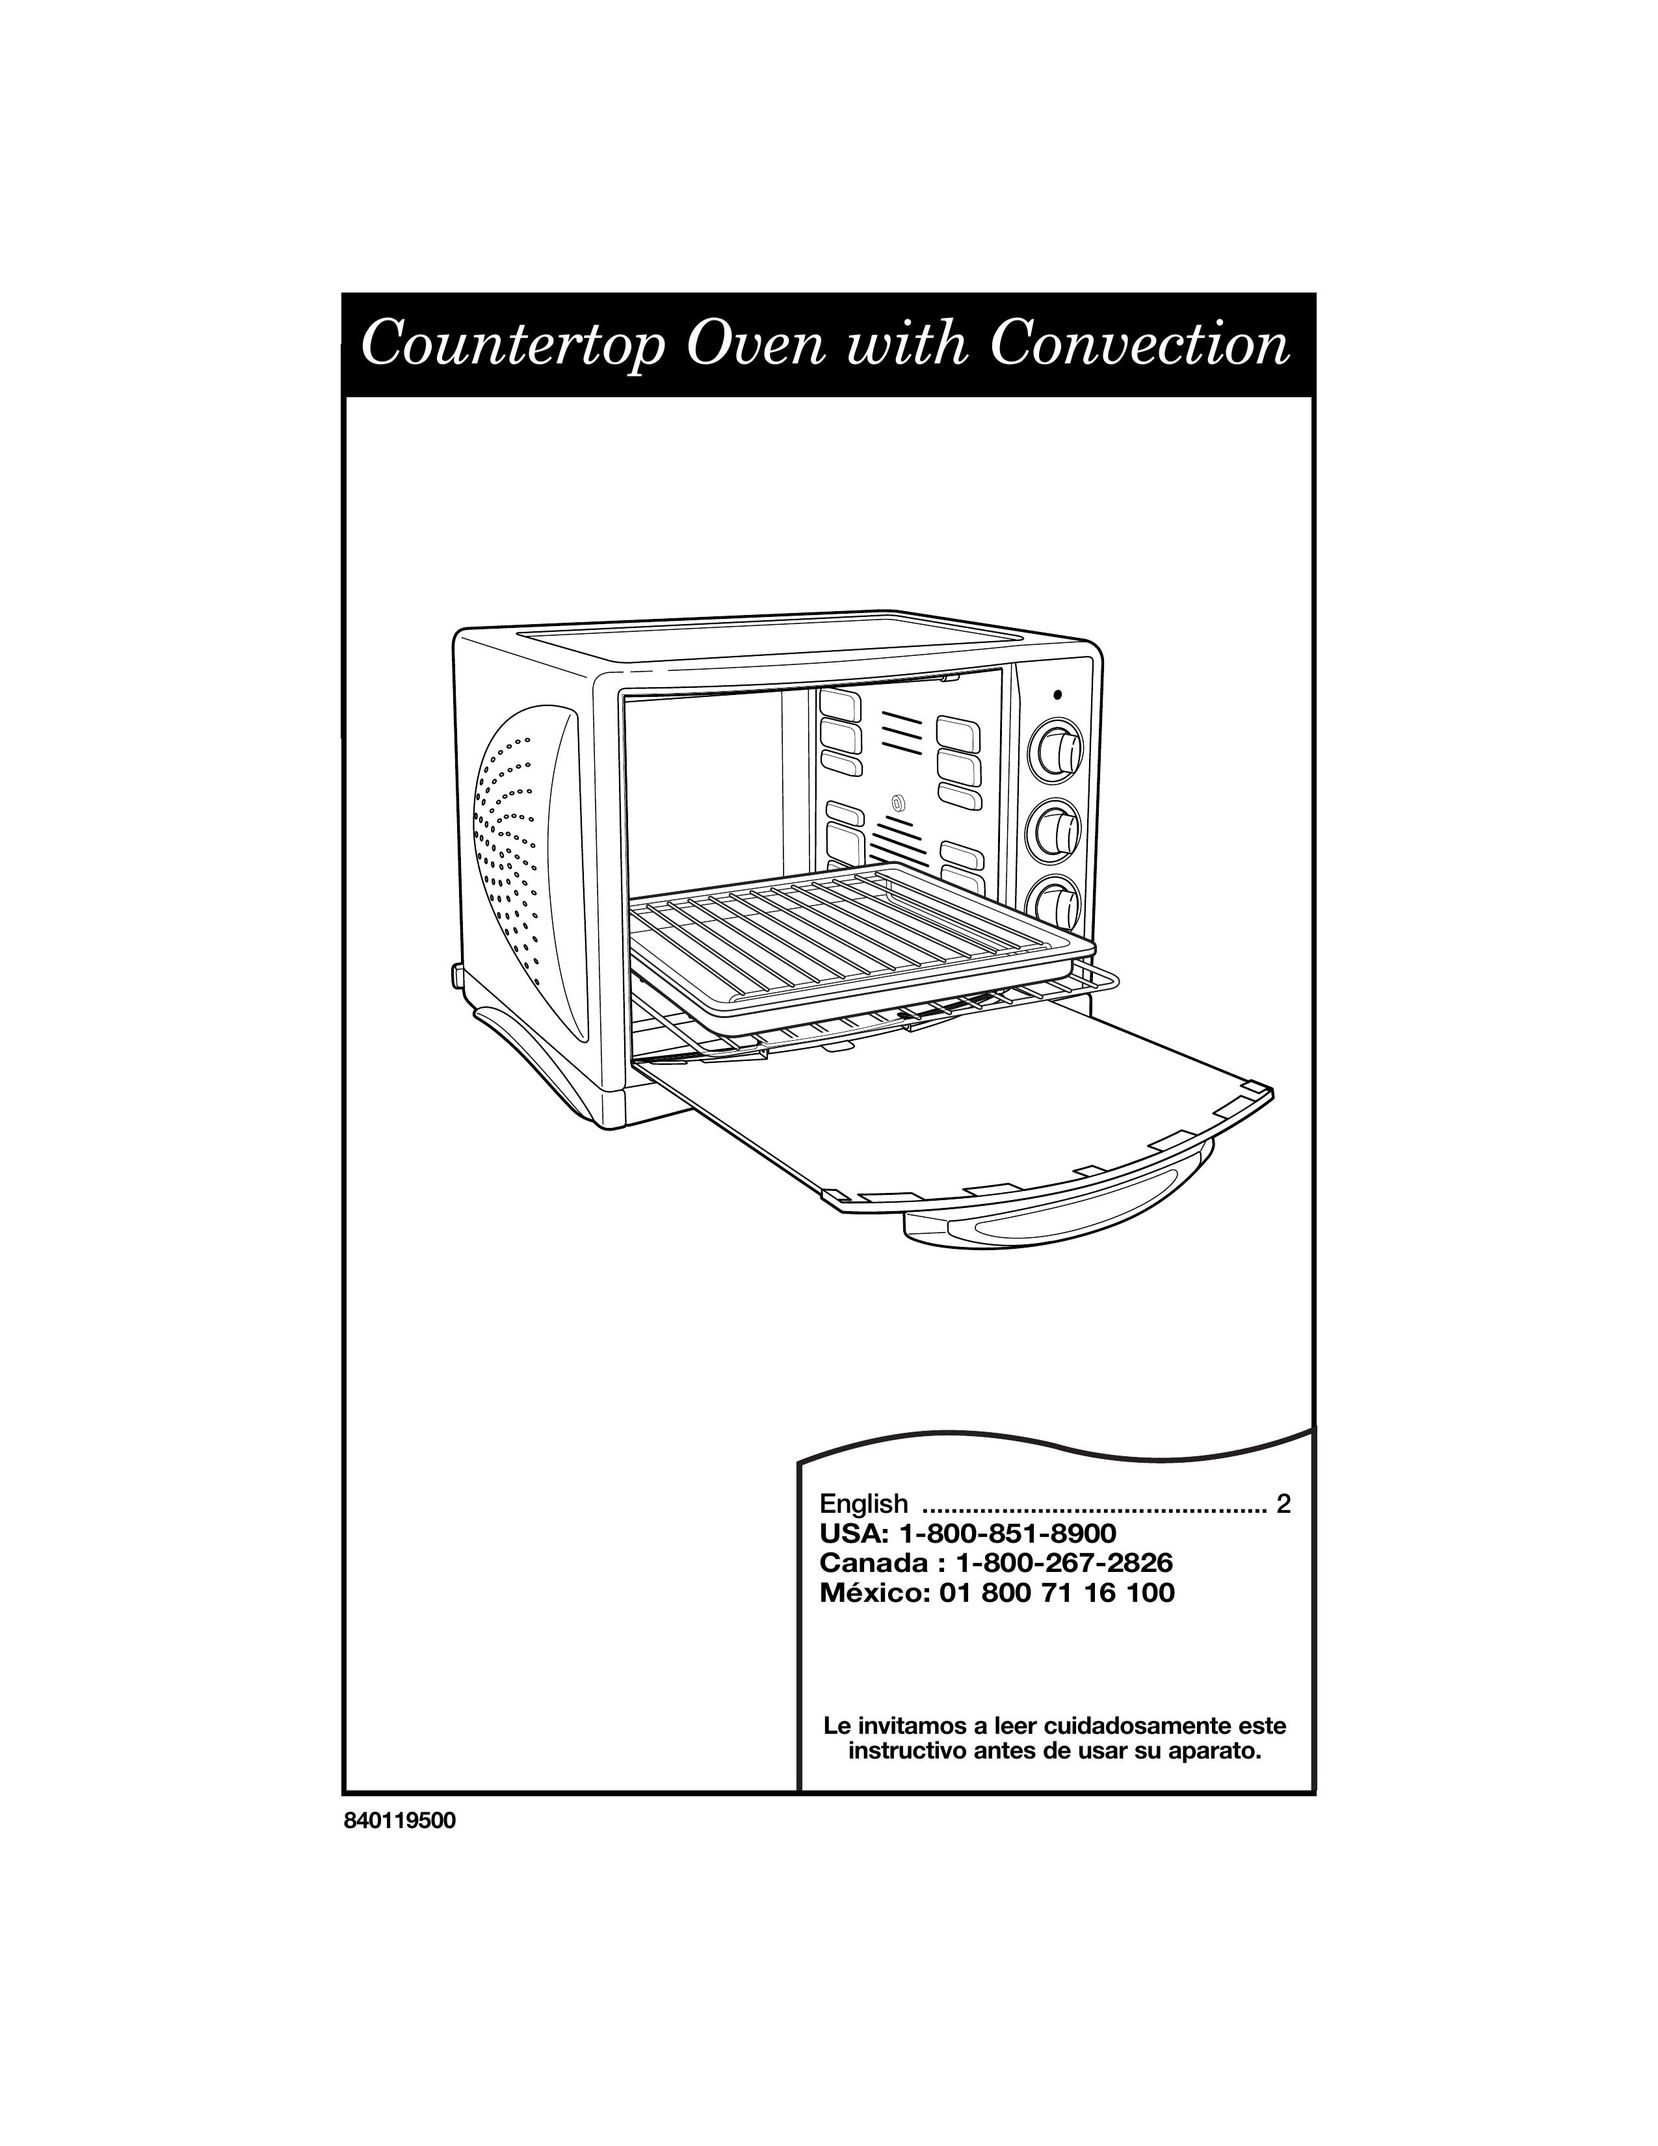 Hamilton Beach Countertop Oven with Convection Convection Oven User Manual